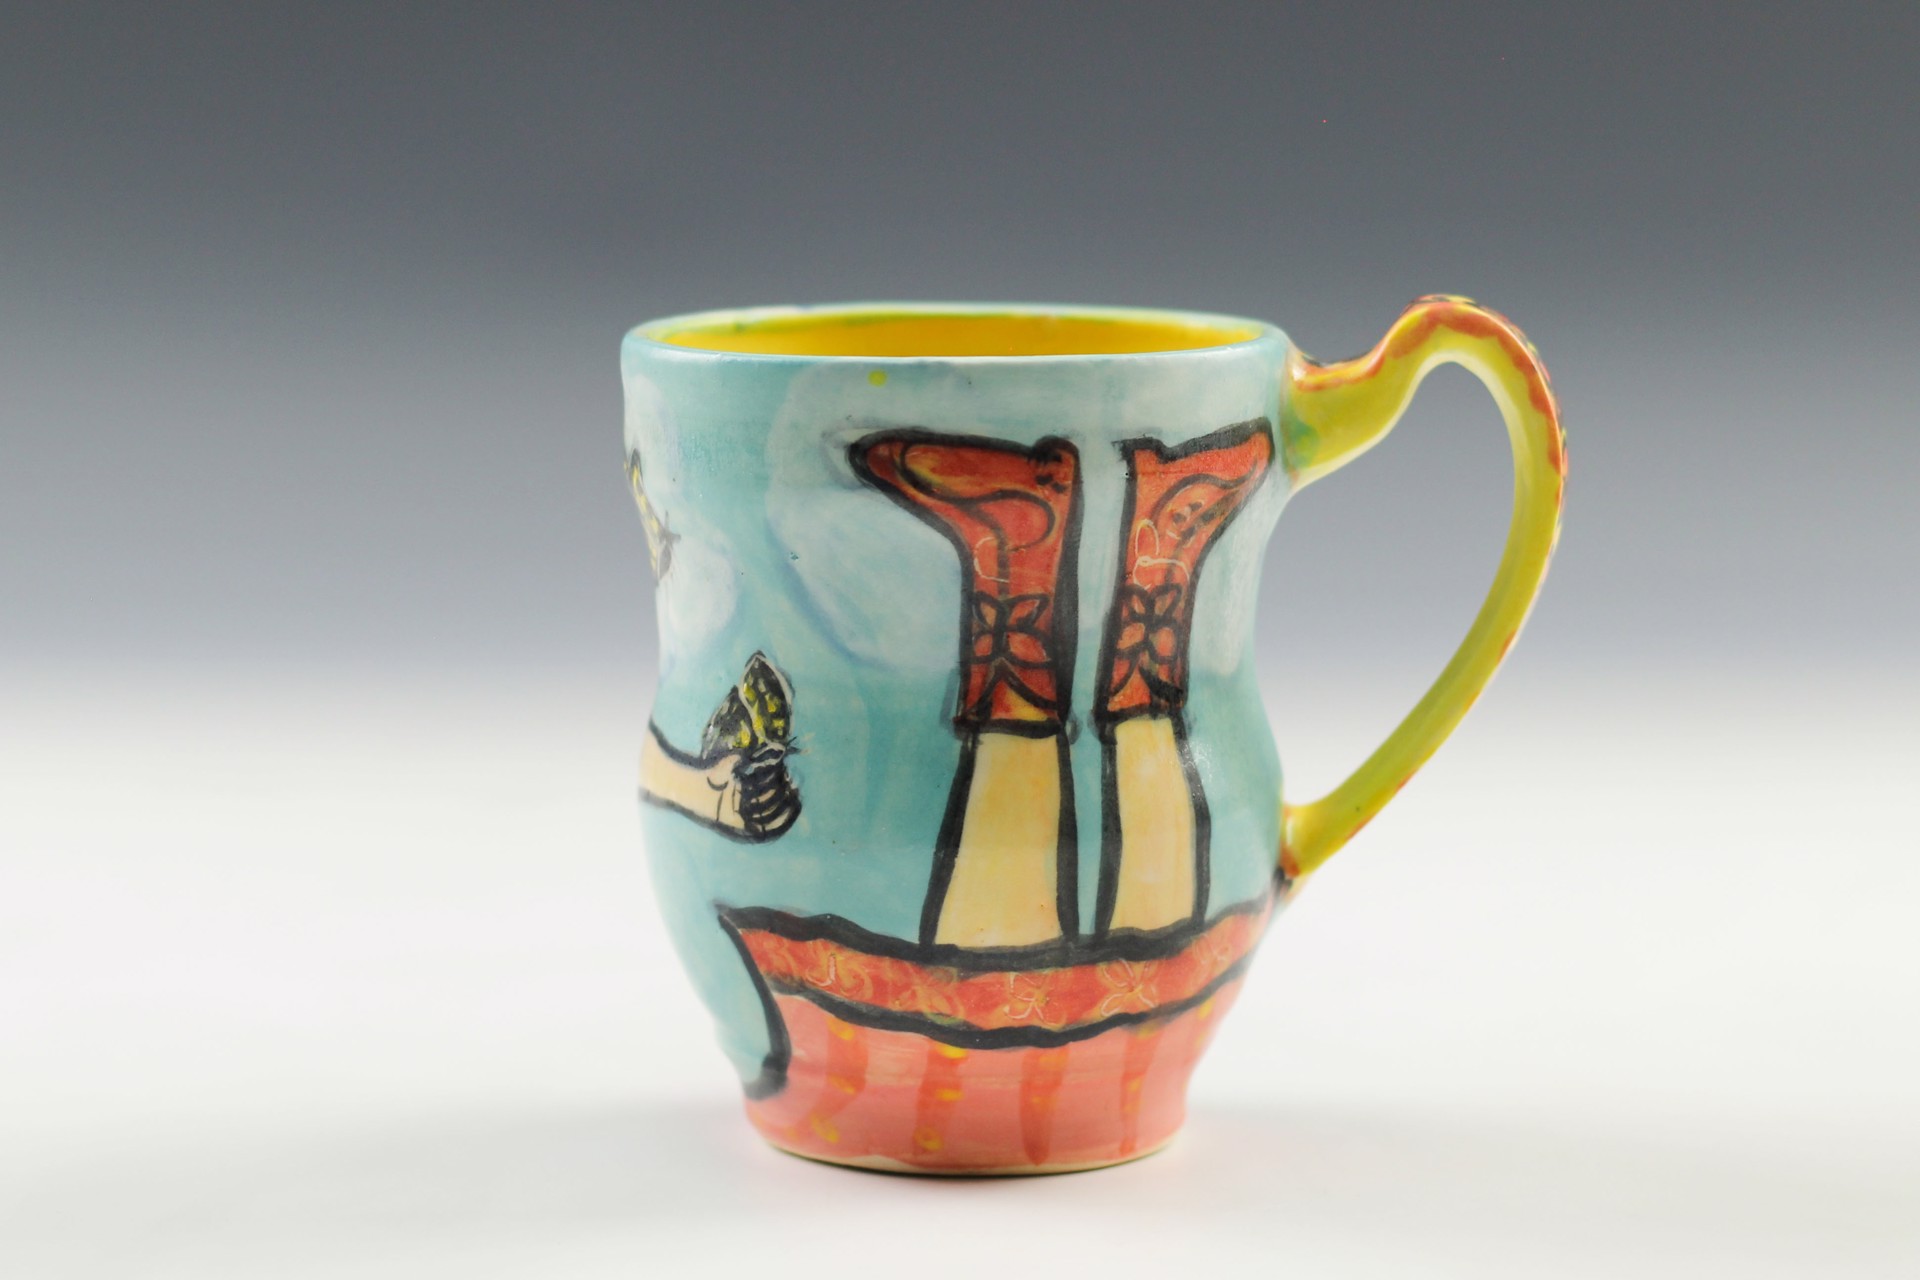 Mug by Wendy Olson